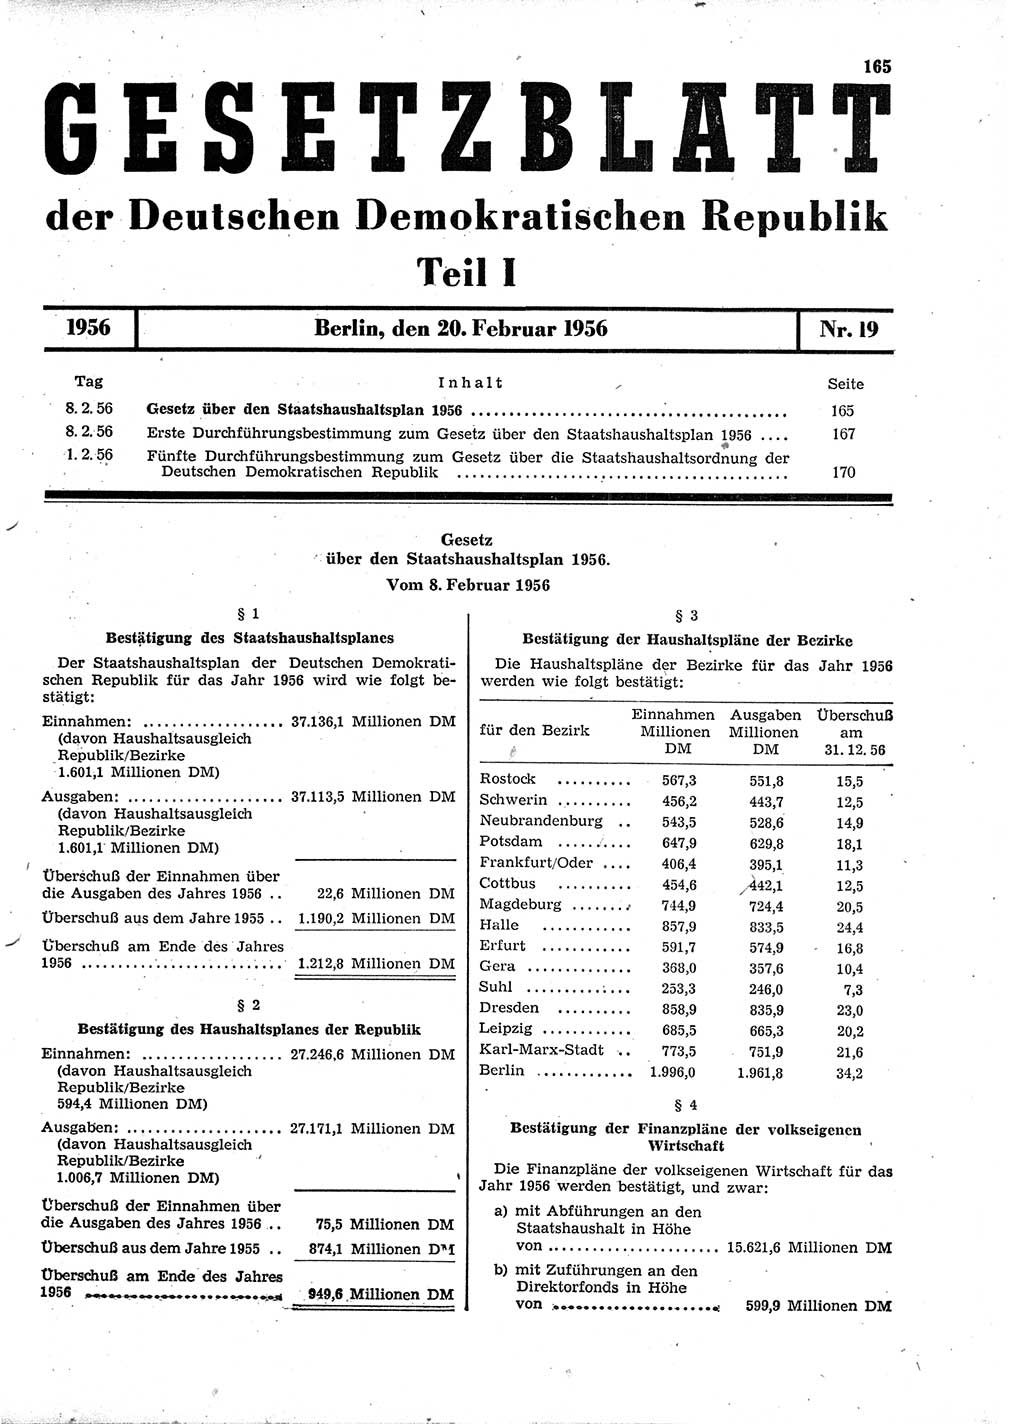 Gesetzblatt (GBl.) der Deutschen Demokratischen Republik (DDR) Teil Ⅰ 1956, Seite 165 (GBl. DDR Ⅰ 1956, S. 165)